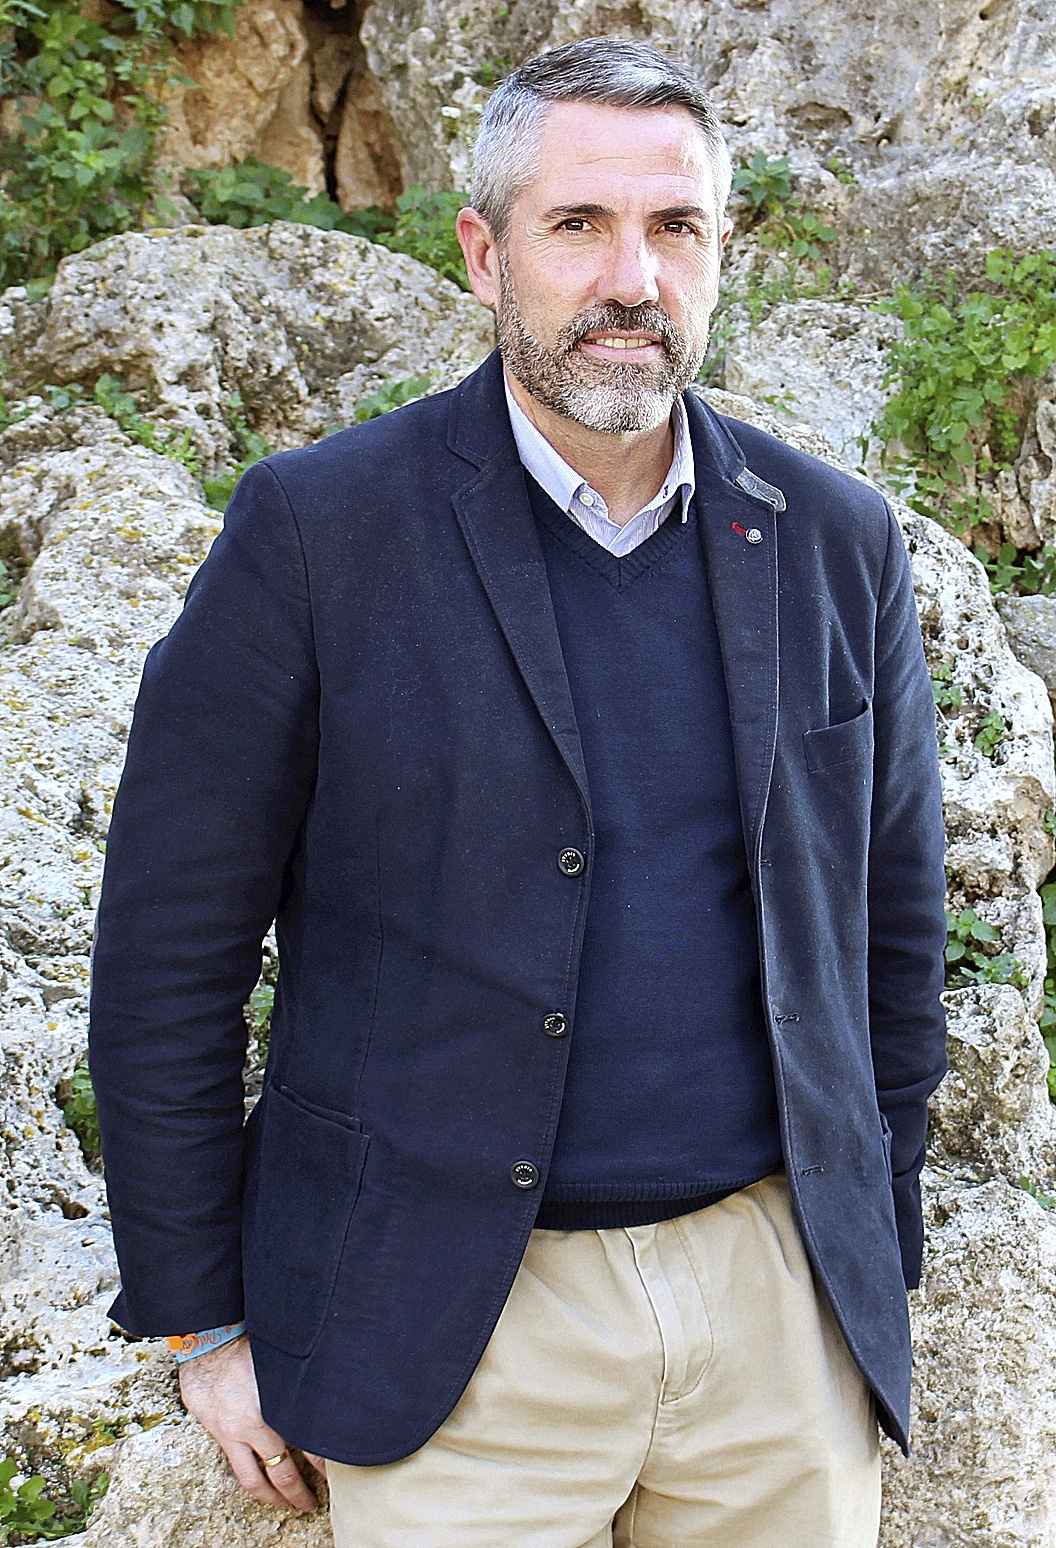 El ex alcalde de Mijas (Málaga), Juan Carlos Maldonado (Cs).